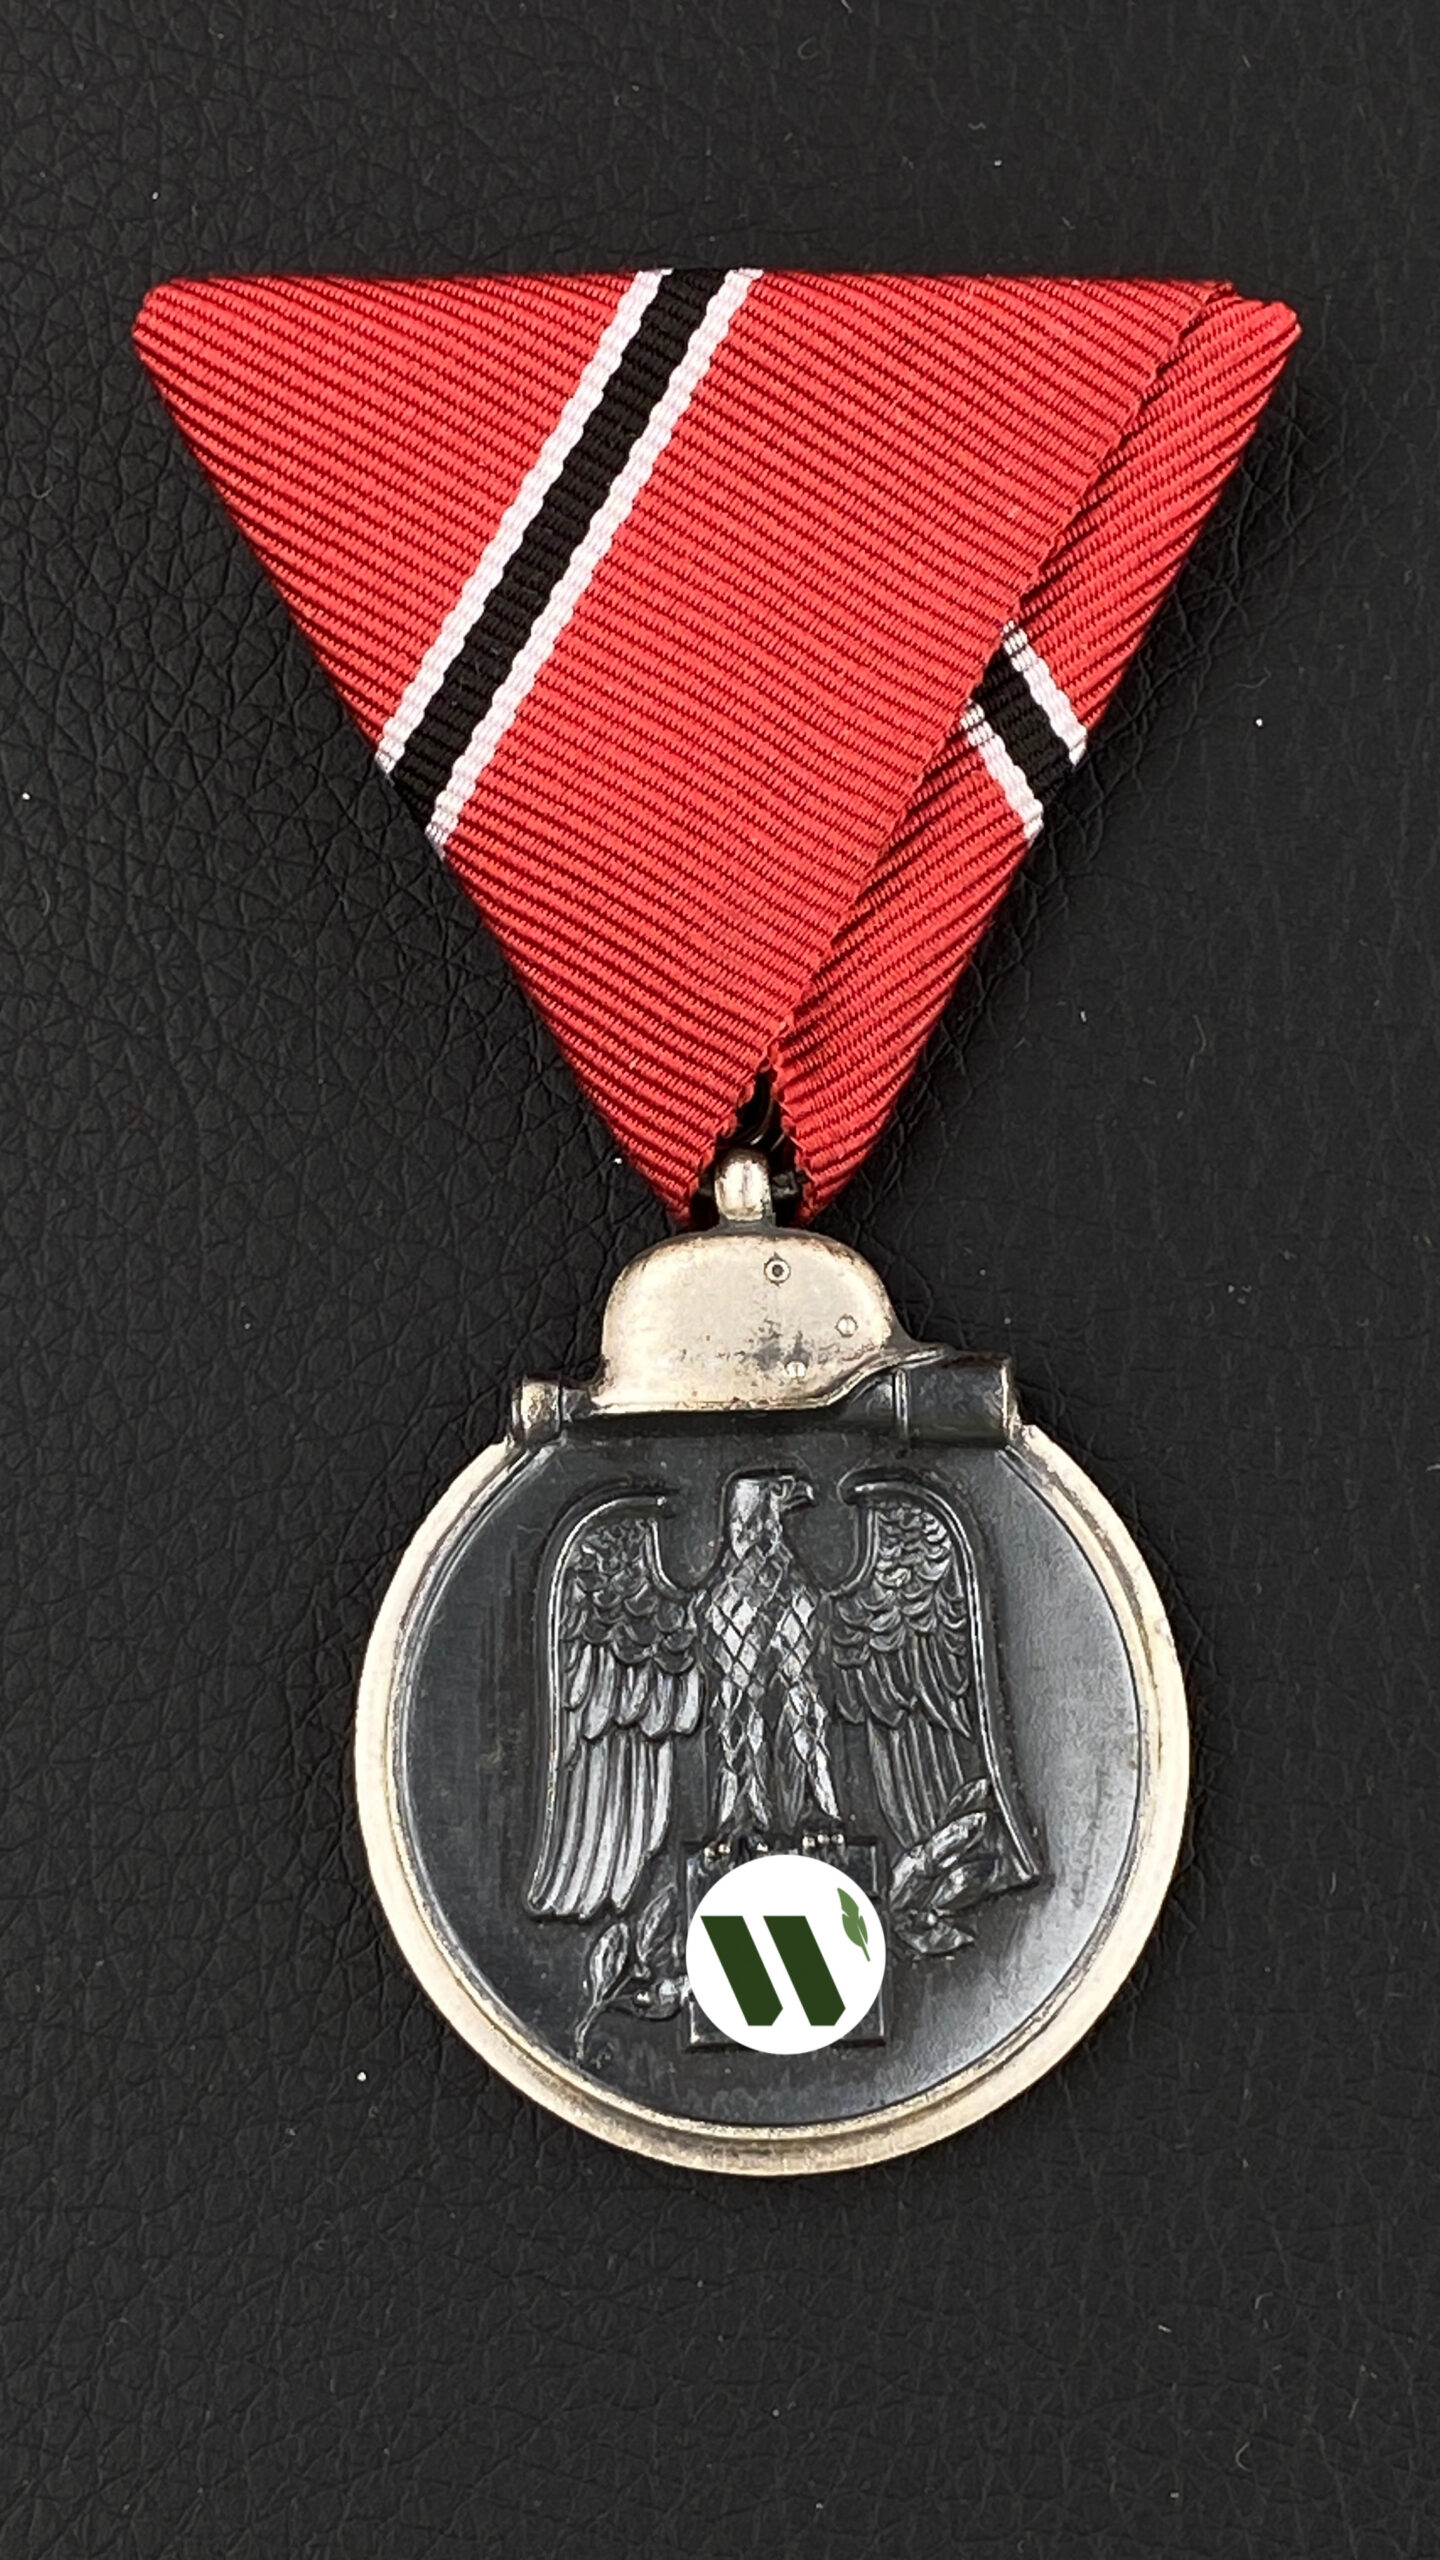 Медаль “За зимнюю кампанию на востоке 1941-42”. Минтовое состояние! На редкой австрийской треугольной колодке. Клеймо “65” – Klein & Quenzer A.G. Idar/Oberstein.